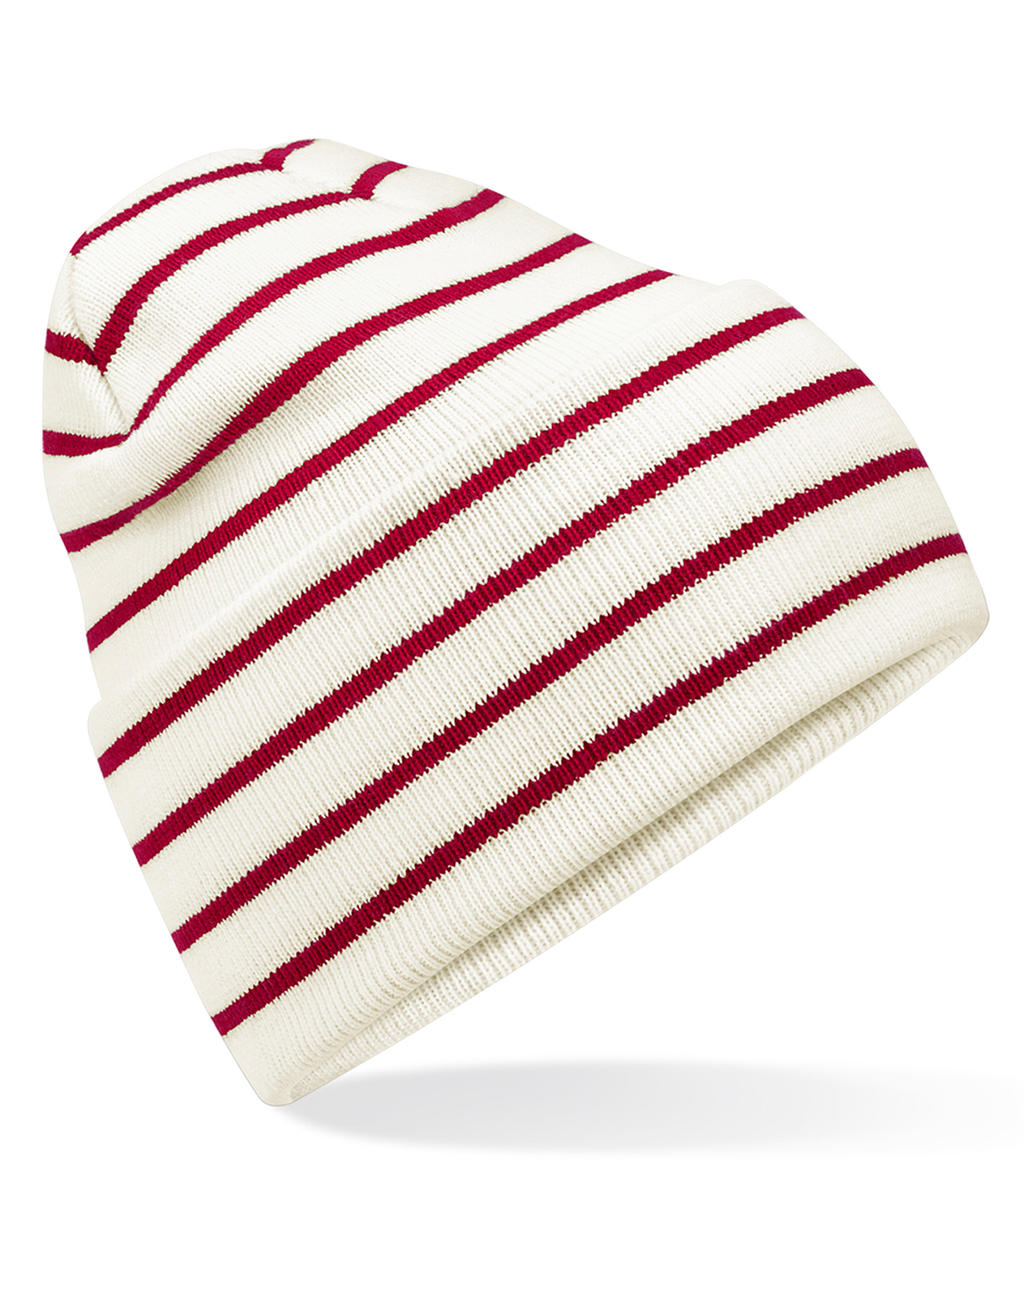 Originálna pruhovaná čiapka so širokou manžetou - soft white/french navy